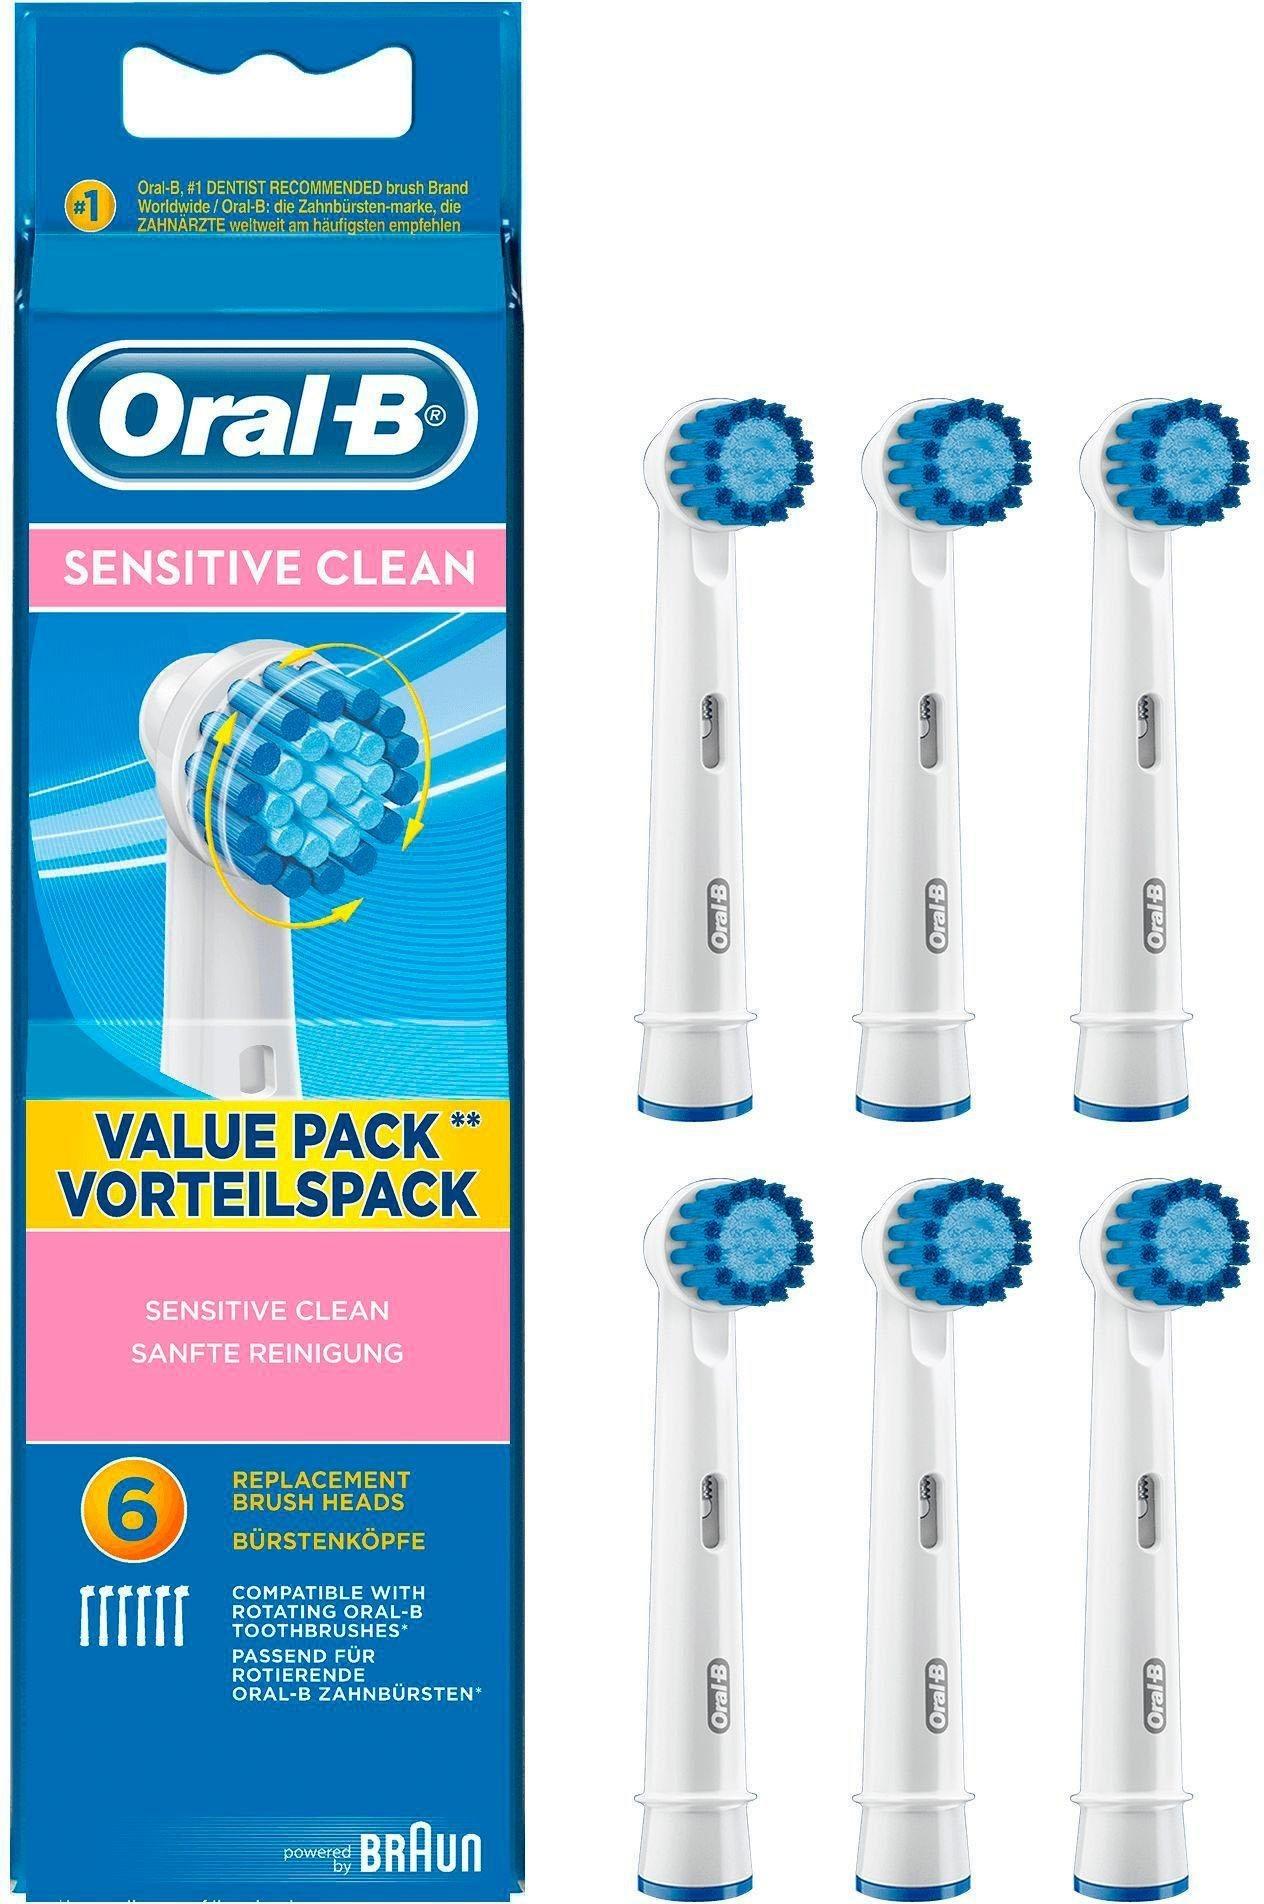 Oral B Sensitive Clean Aufsteckbürste St. 6 4.1/5 Erfahrungen Sternen